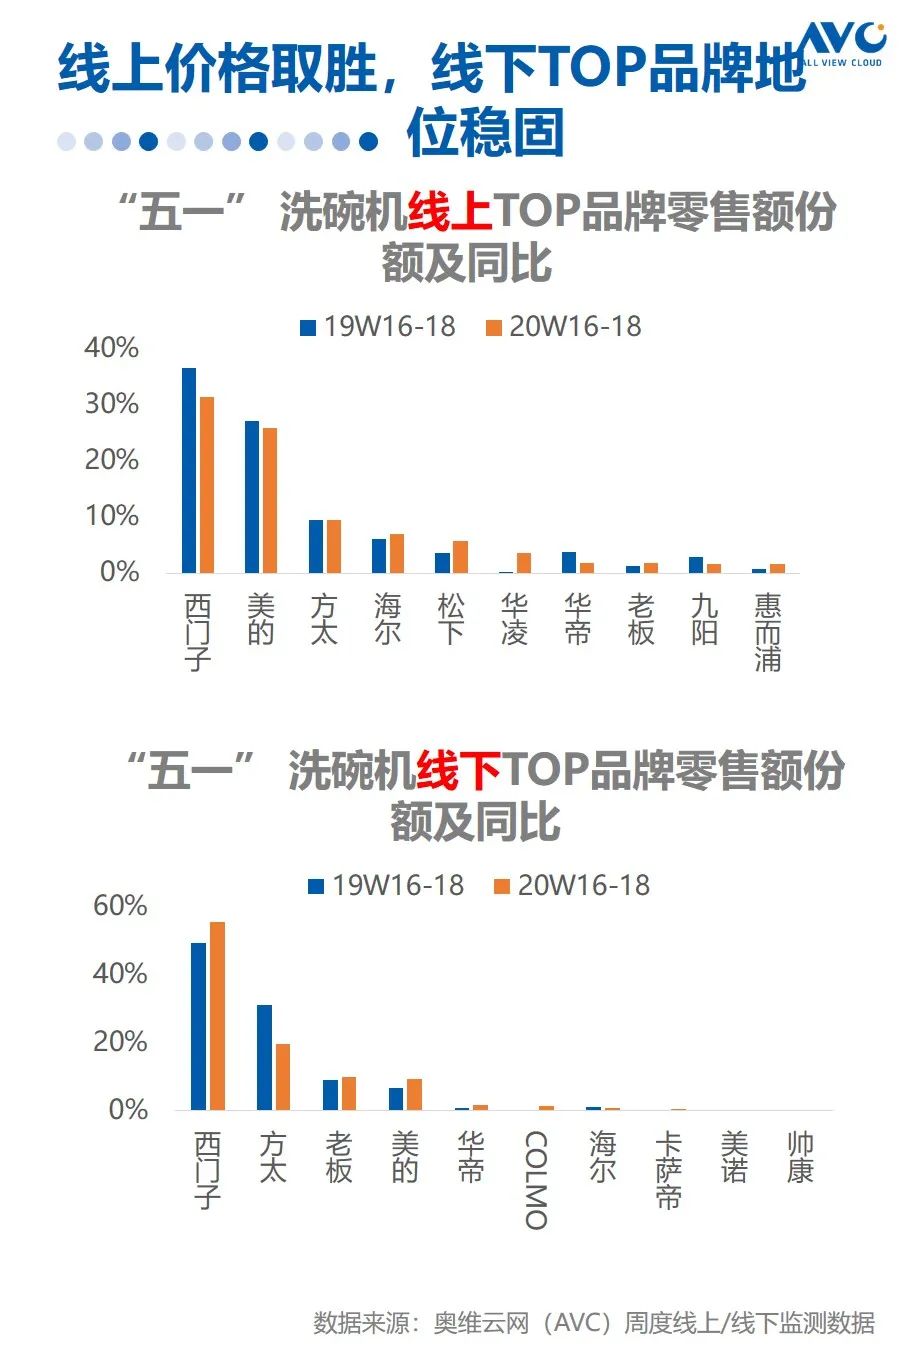 新知图谱, 报告 | 2020年中国厨电市场五一促销总结报告